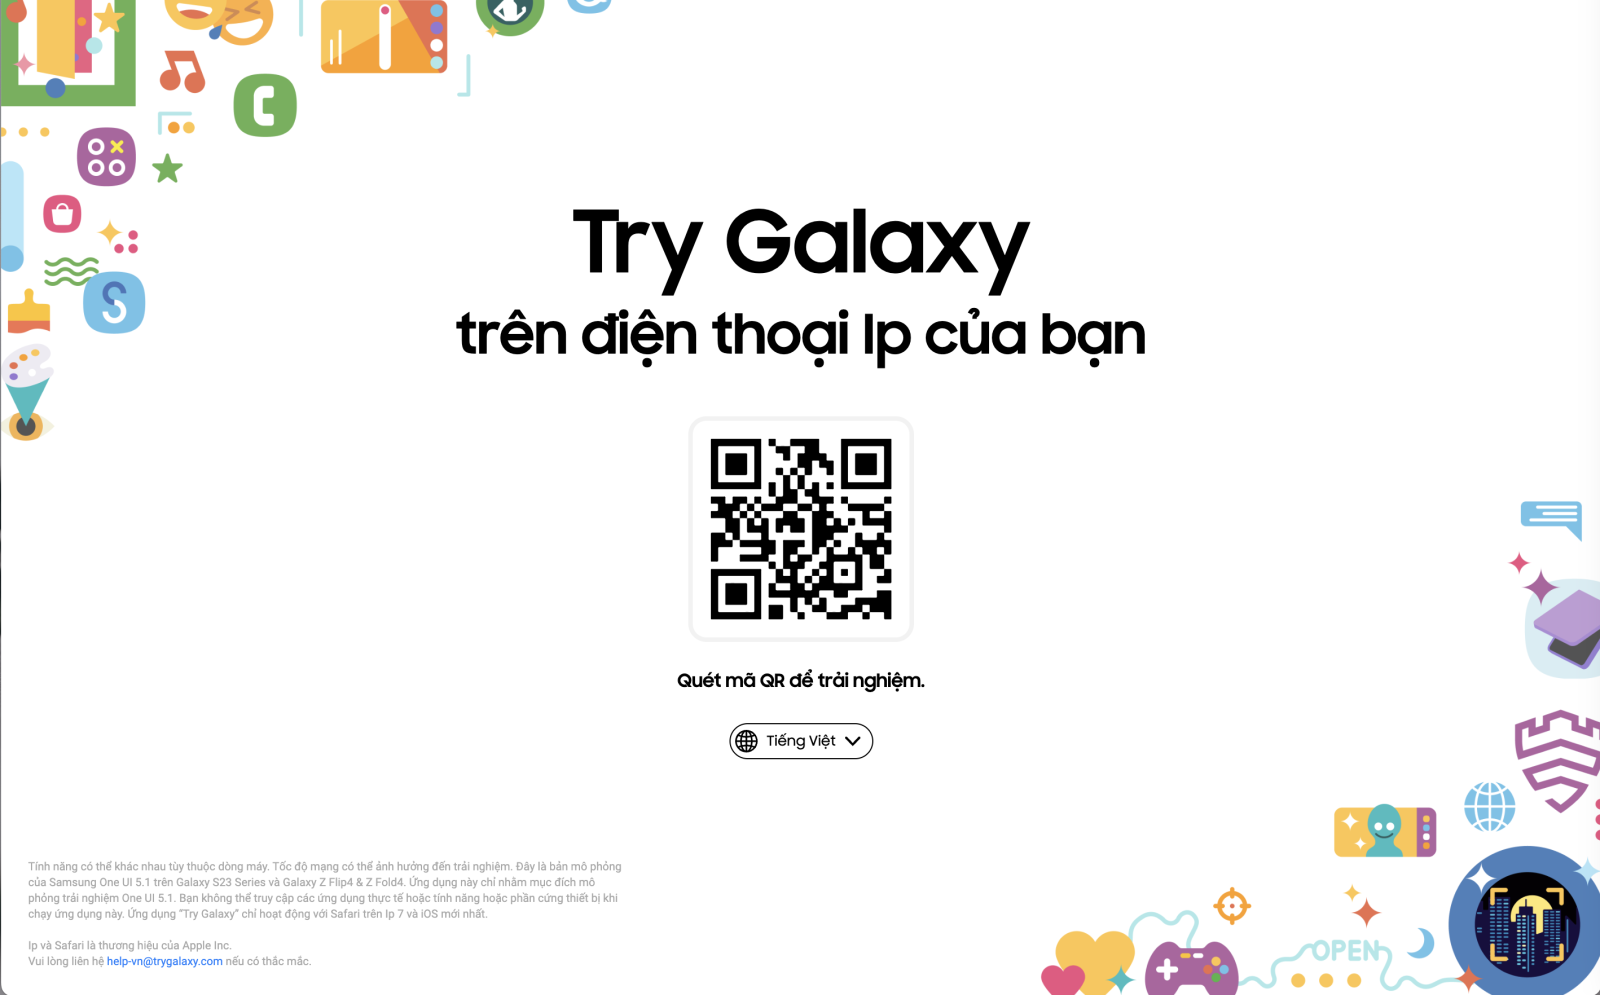 Try Galaxy: Ứng dụng giúp người dùng trải nghiệm Samsung ngay trên chiếc iPhone của mình